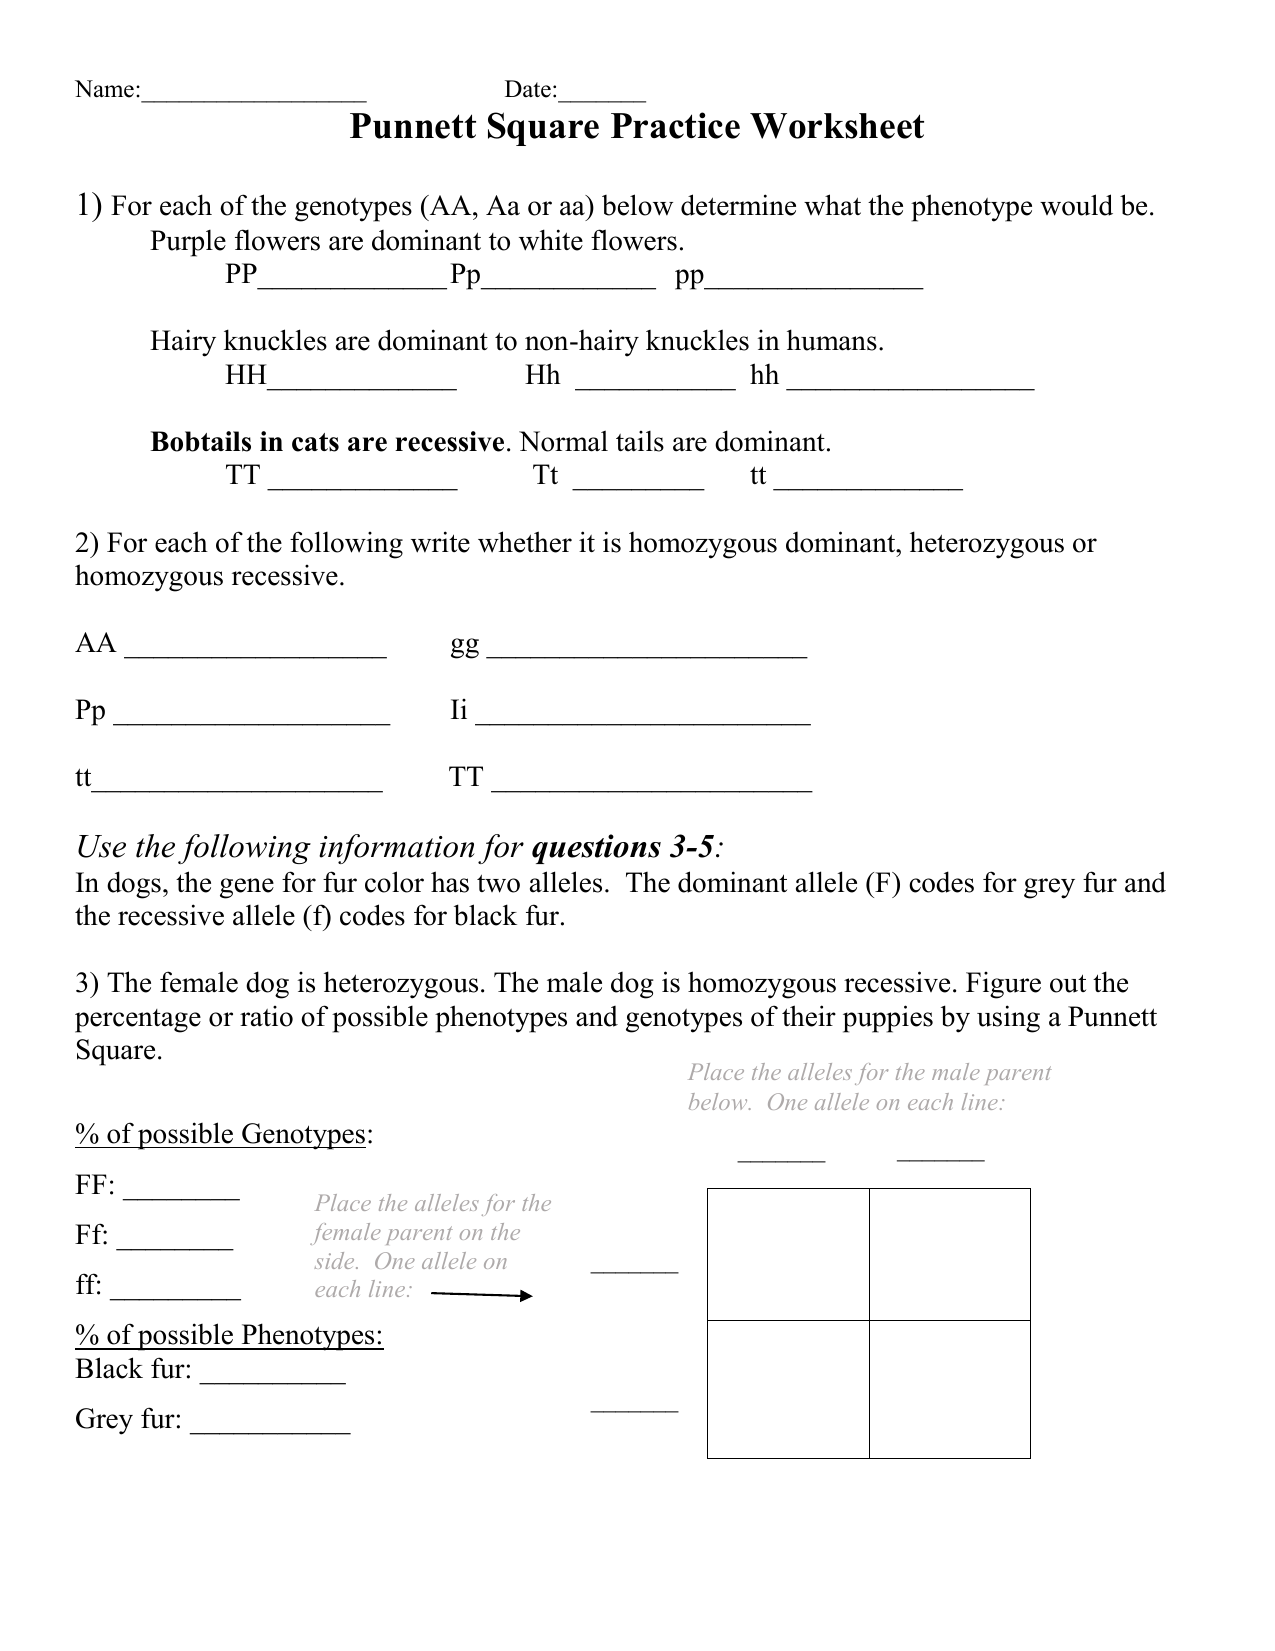 Punnett Square Practice Worksheet (Edited) Within Punnett Square Practice Worksheet Answers